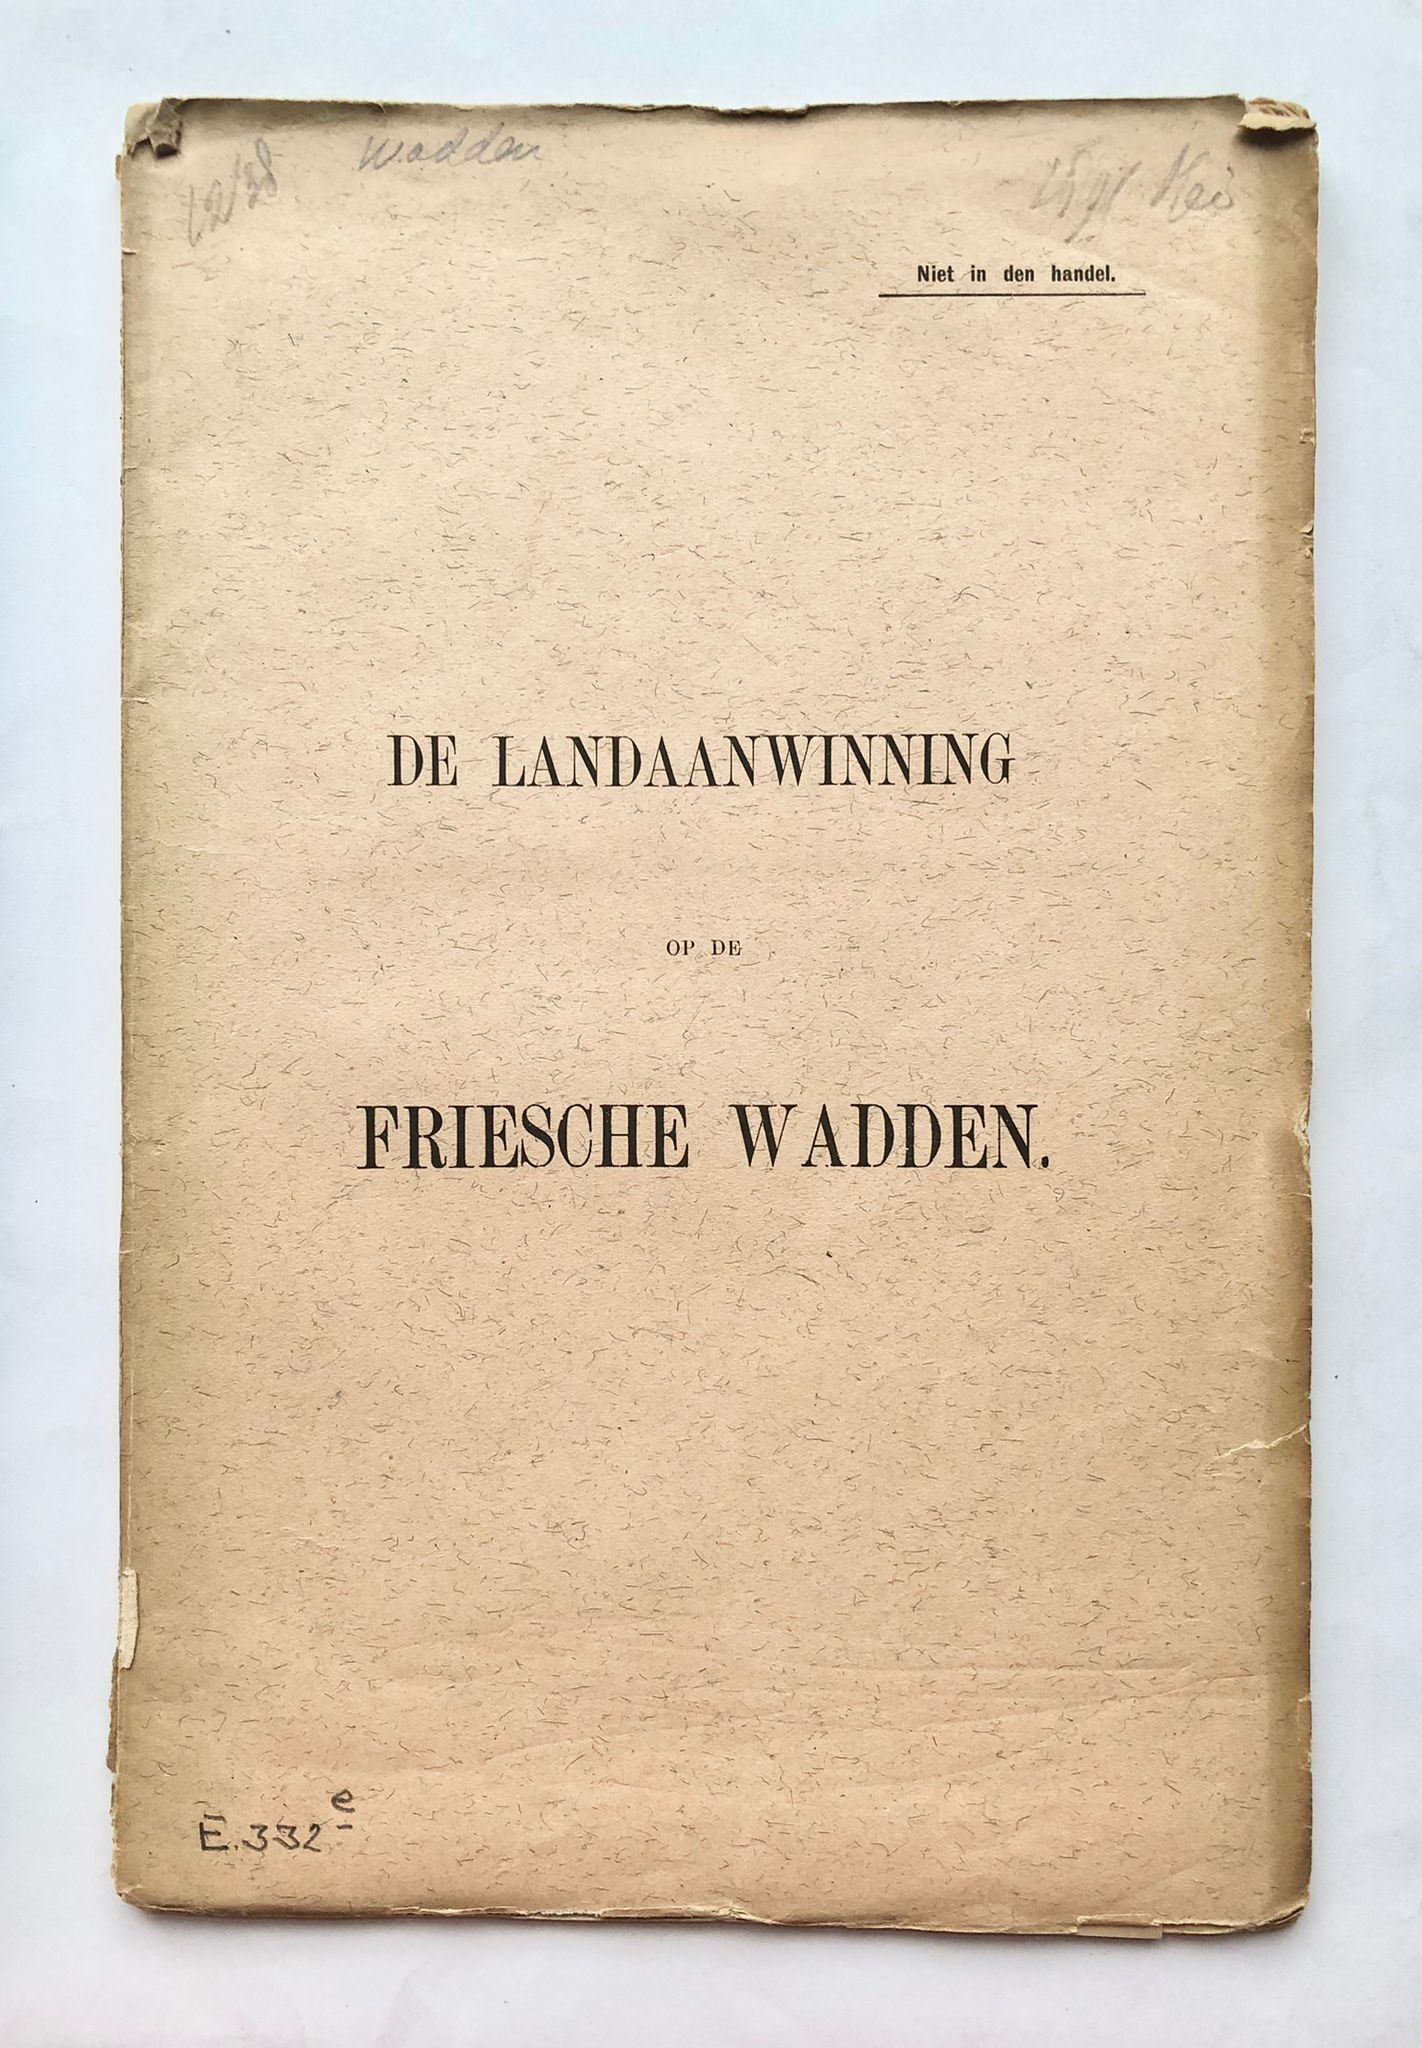 [First edition, Friesland] De landaanwinning op de Friesche wadden, [1891], NIet in den handel, with map of Friesche Wadden volgens de opnemingen van 1879.